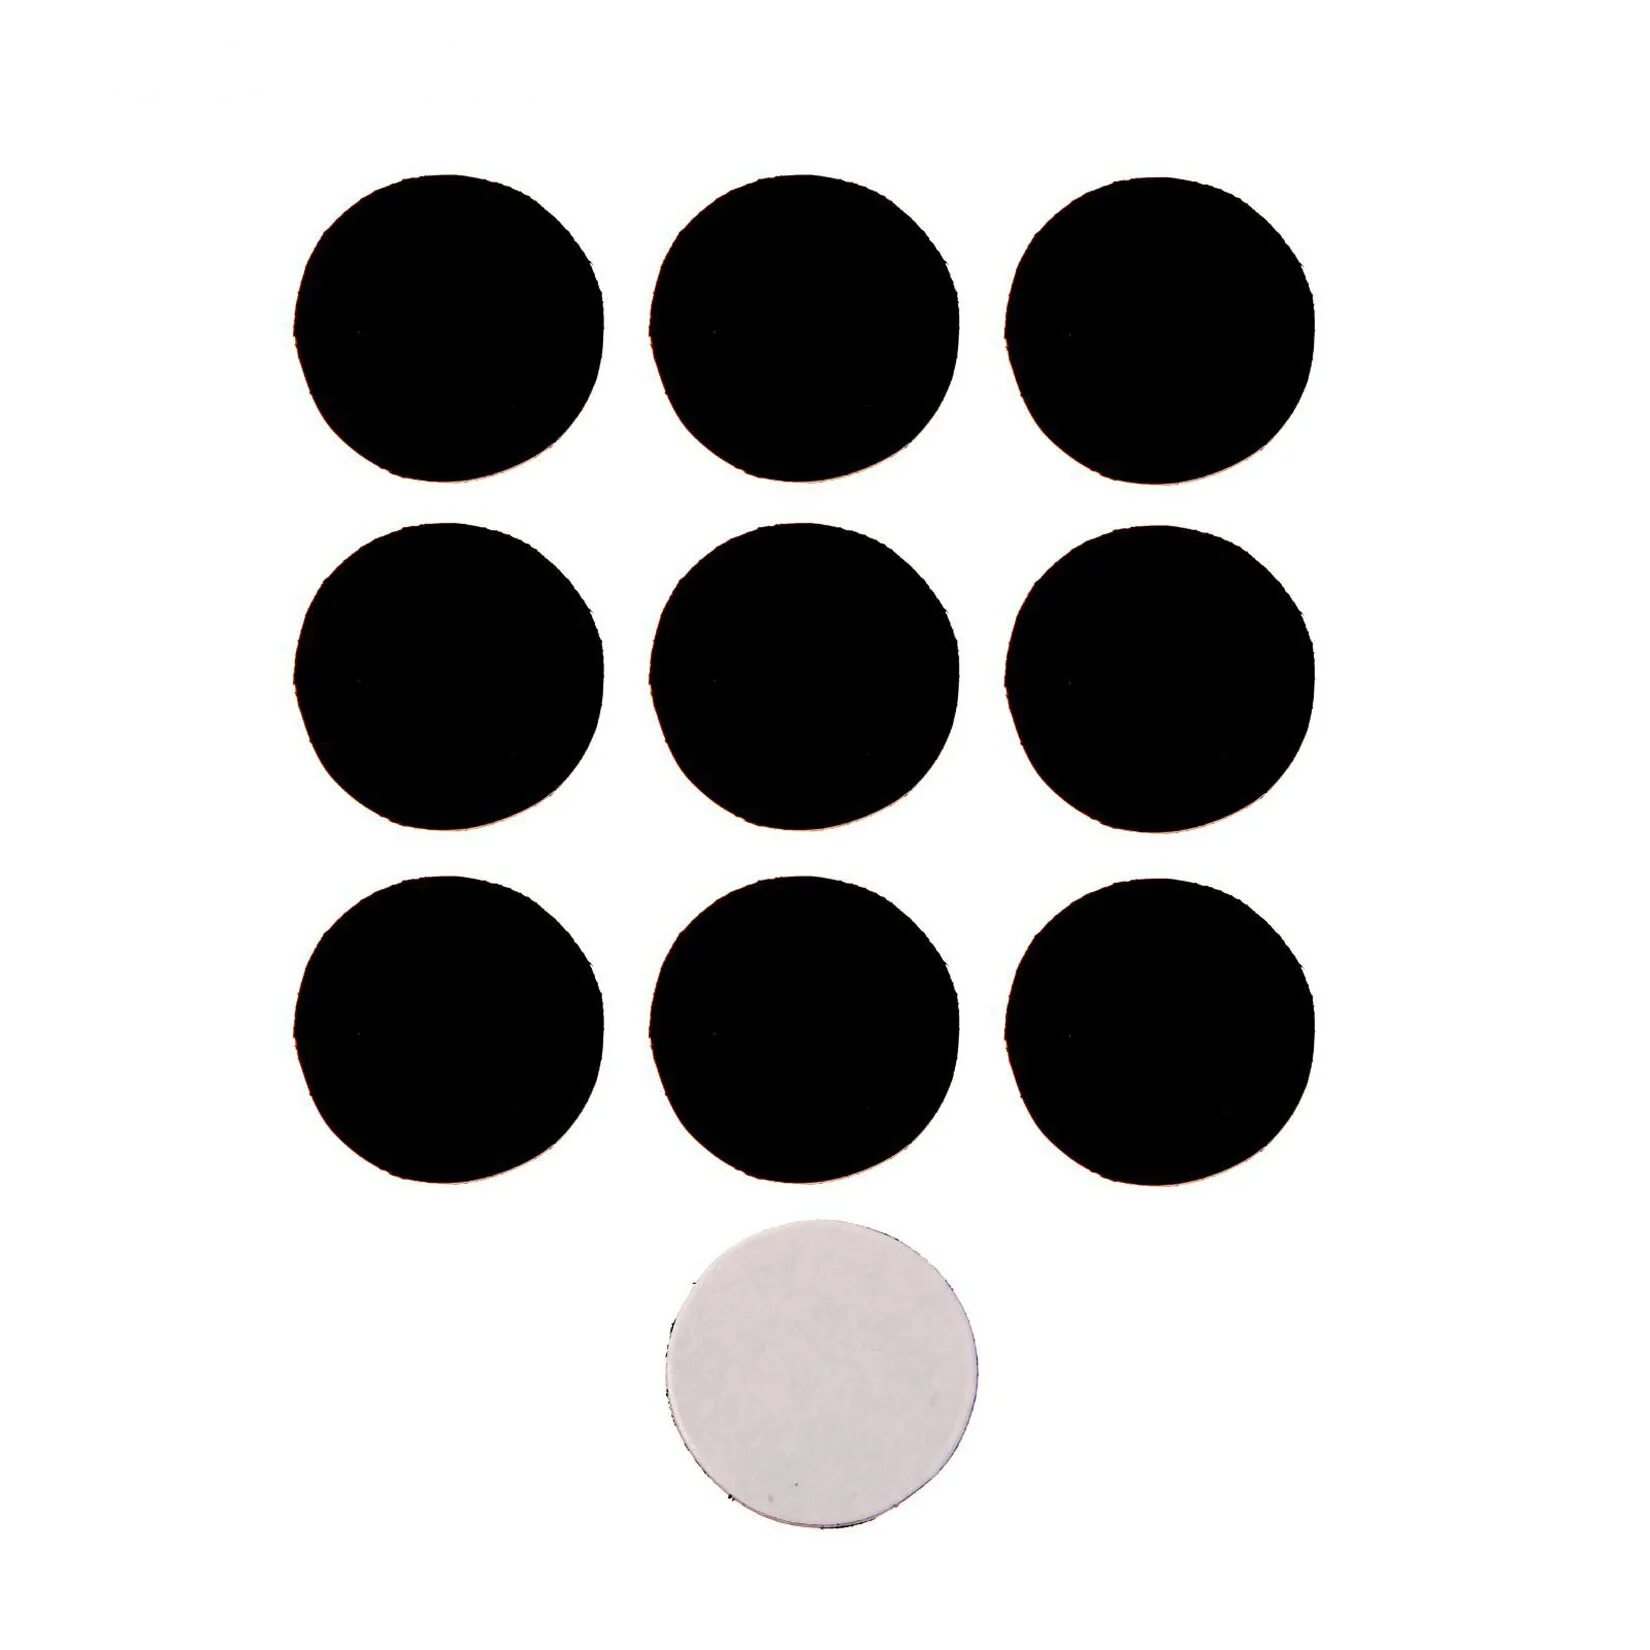 Круги маленькие много. Черный круг. Черные кружочки. Много кругов. Трафарет круги.